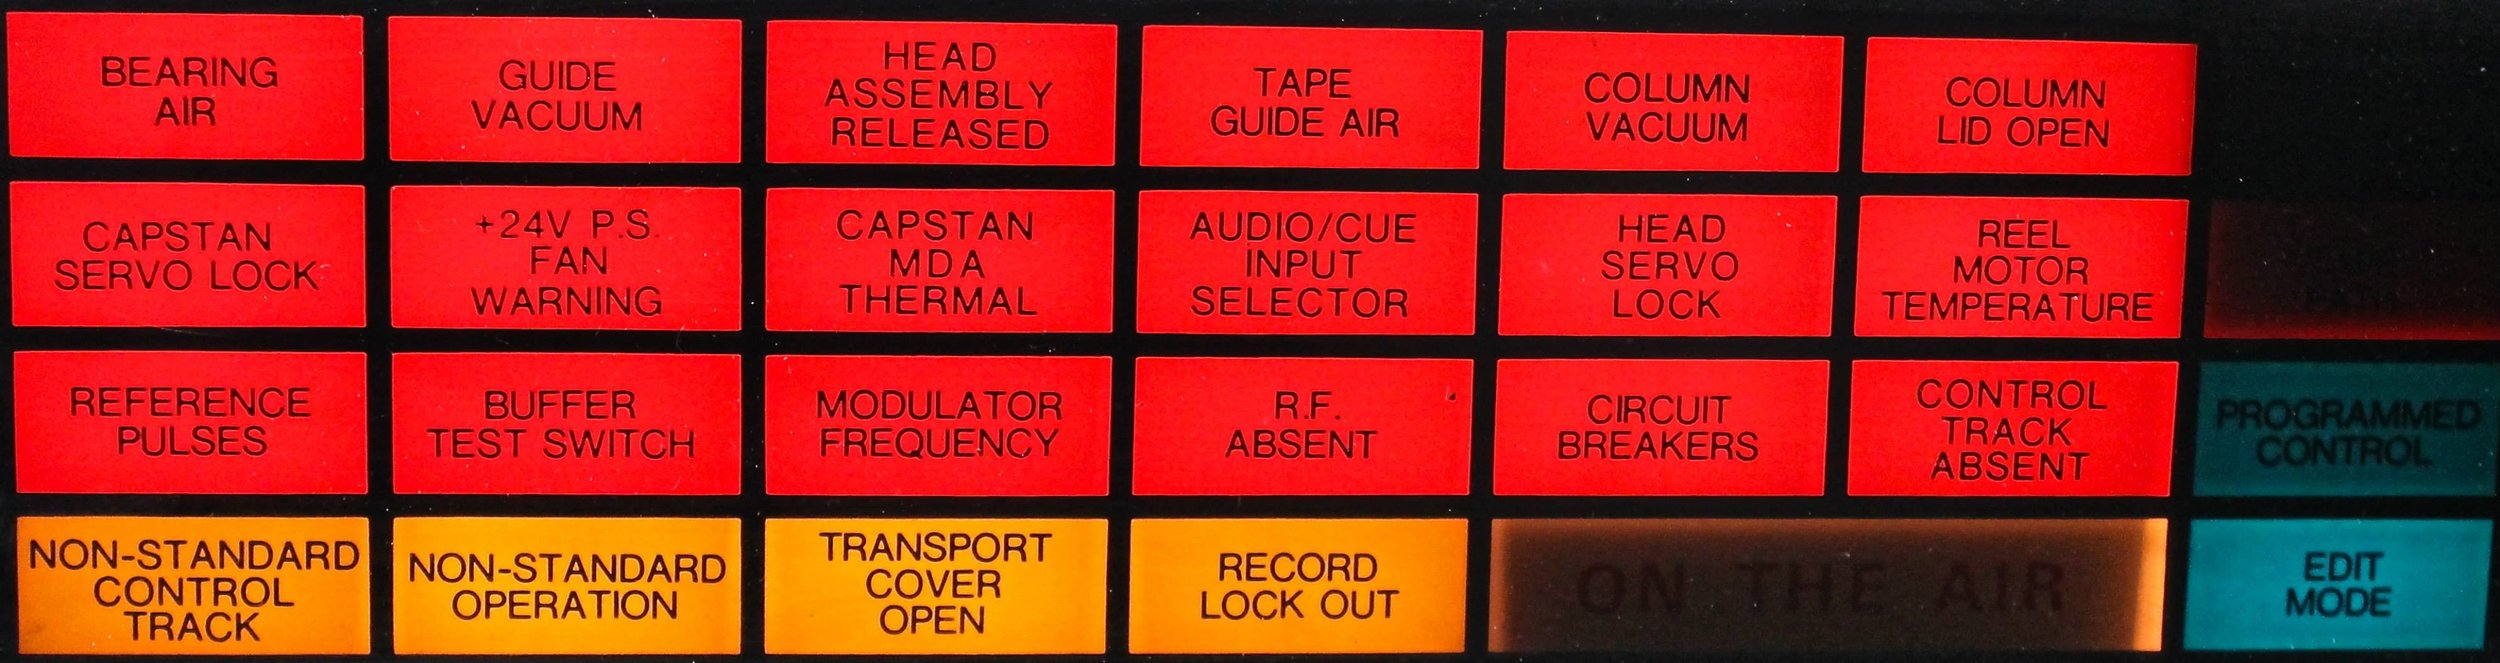 AVR-1 warning light panel